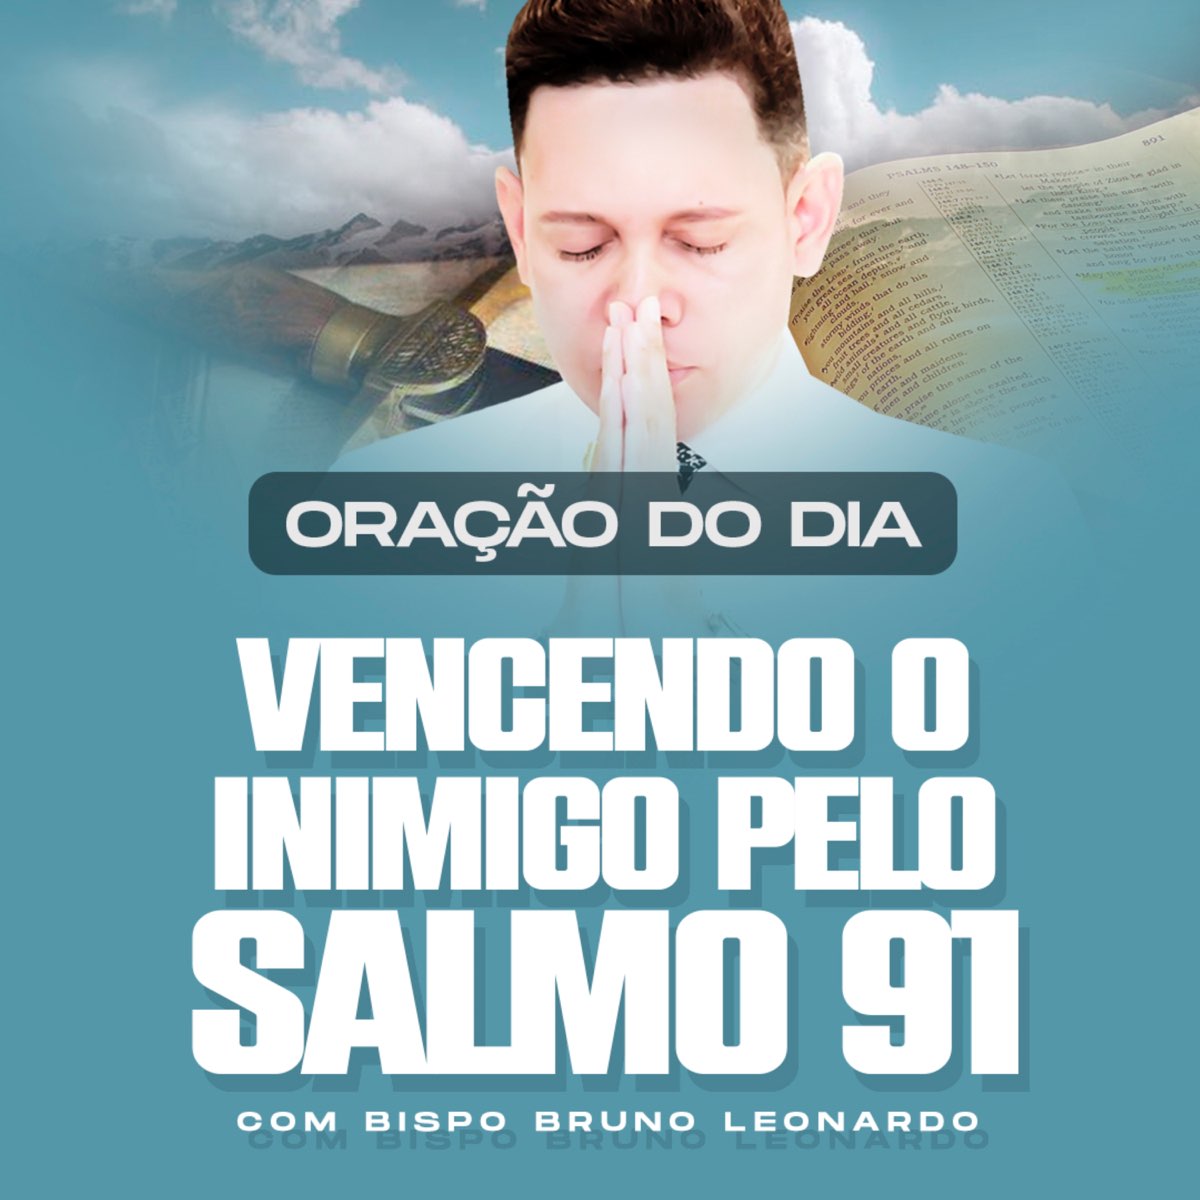 Play Oração para Ter Paz na Alma by Bispo Bruno Leonardo on